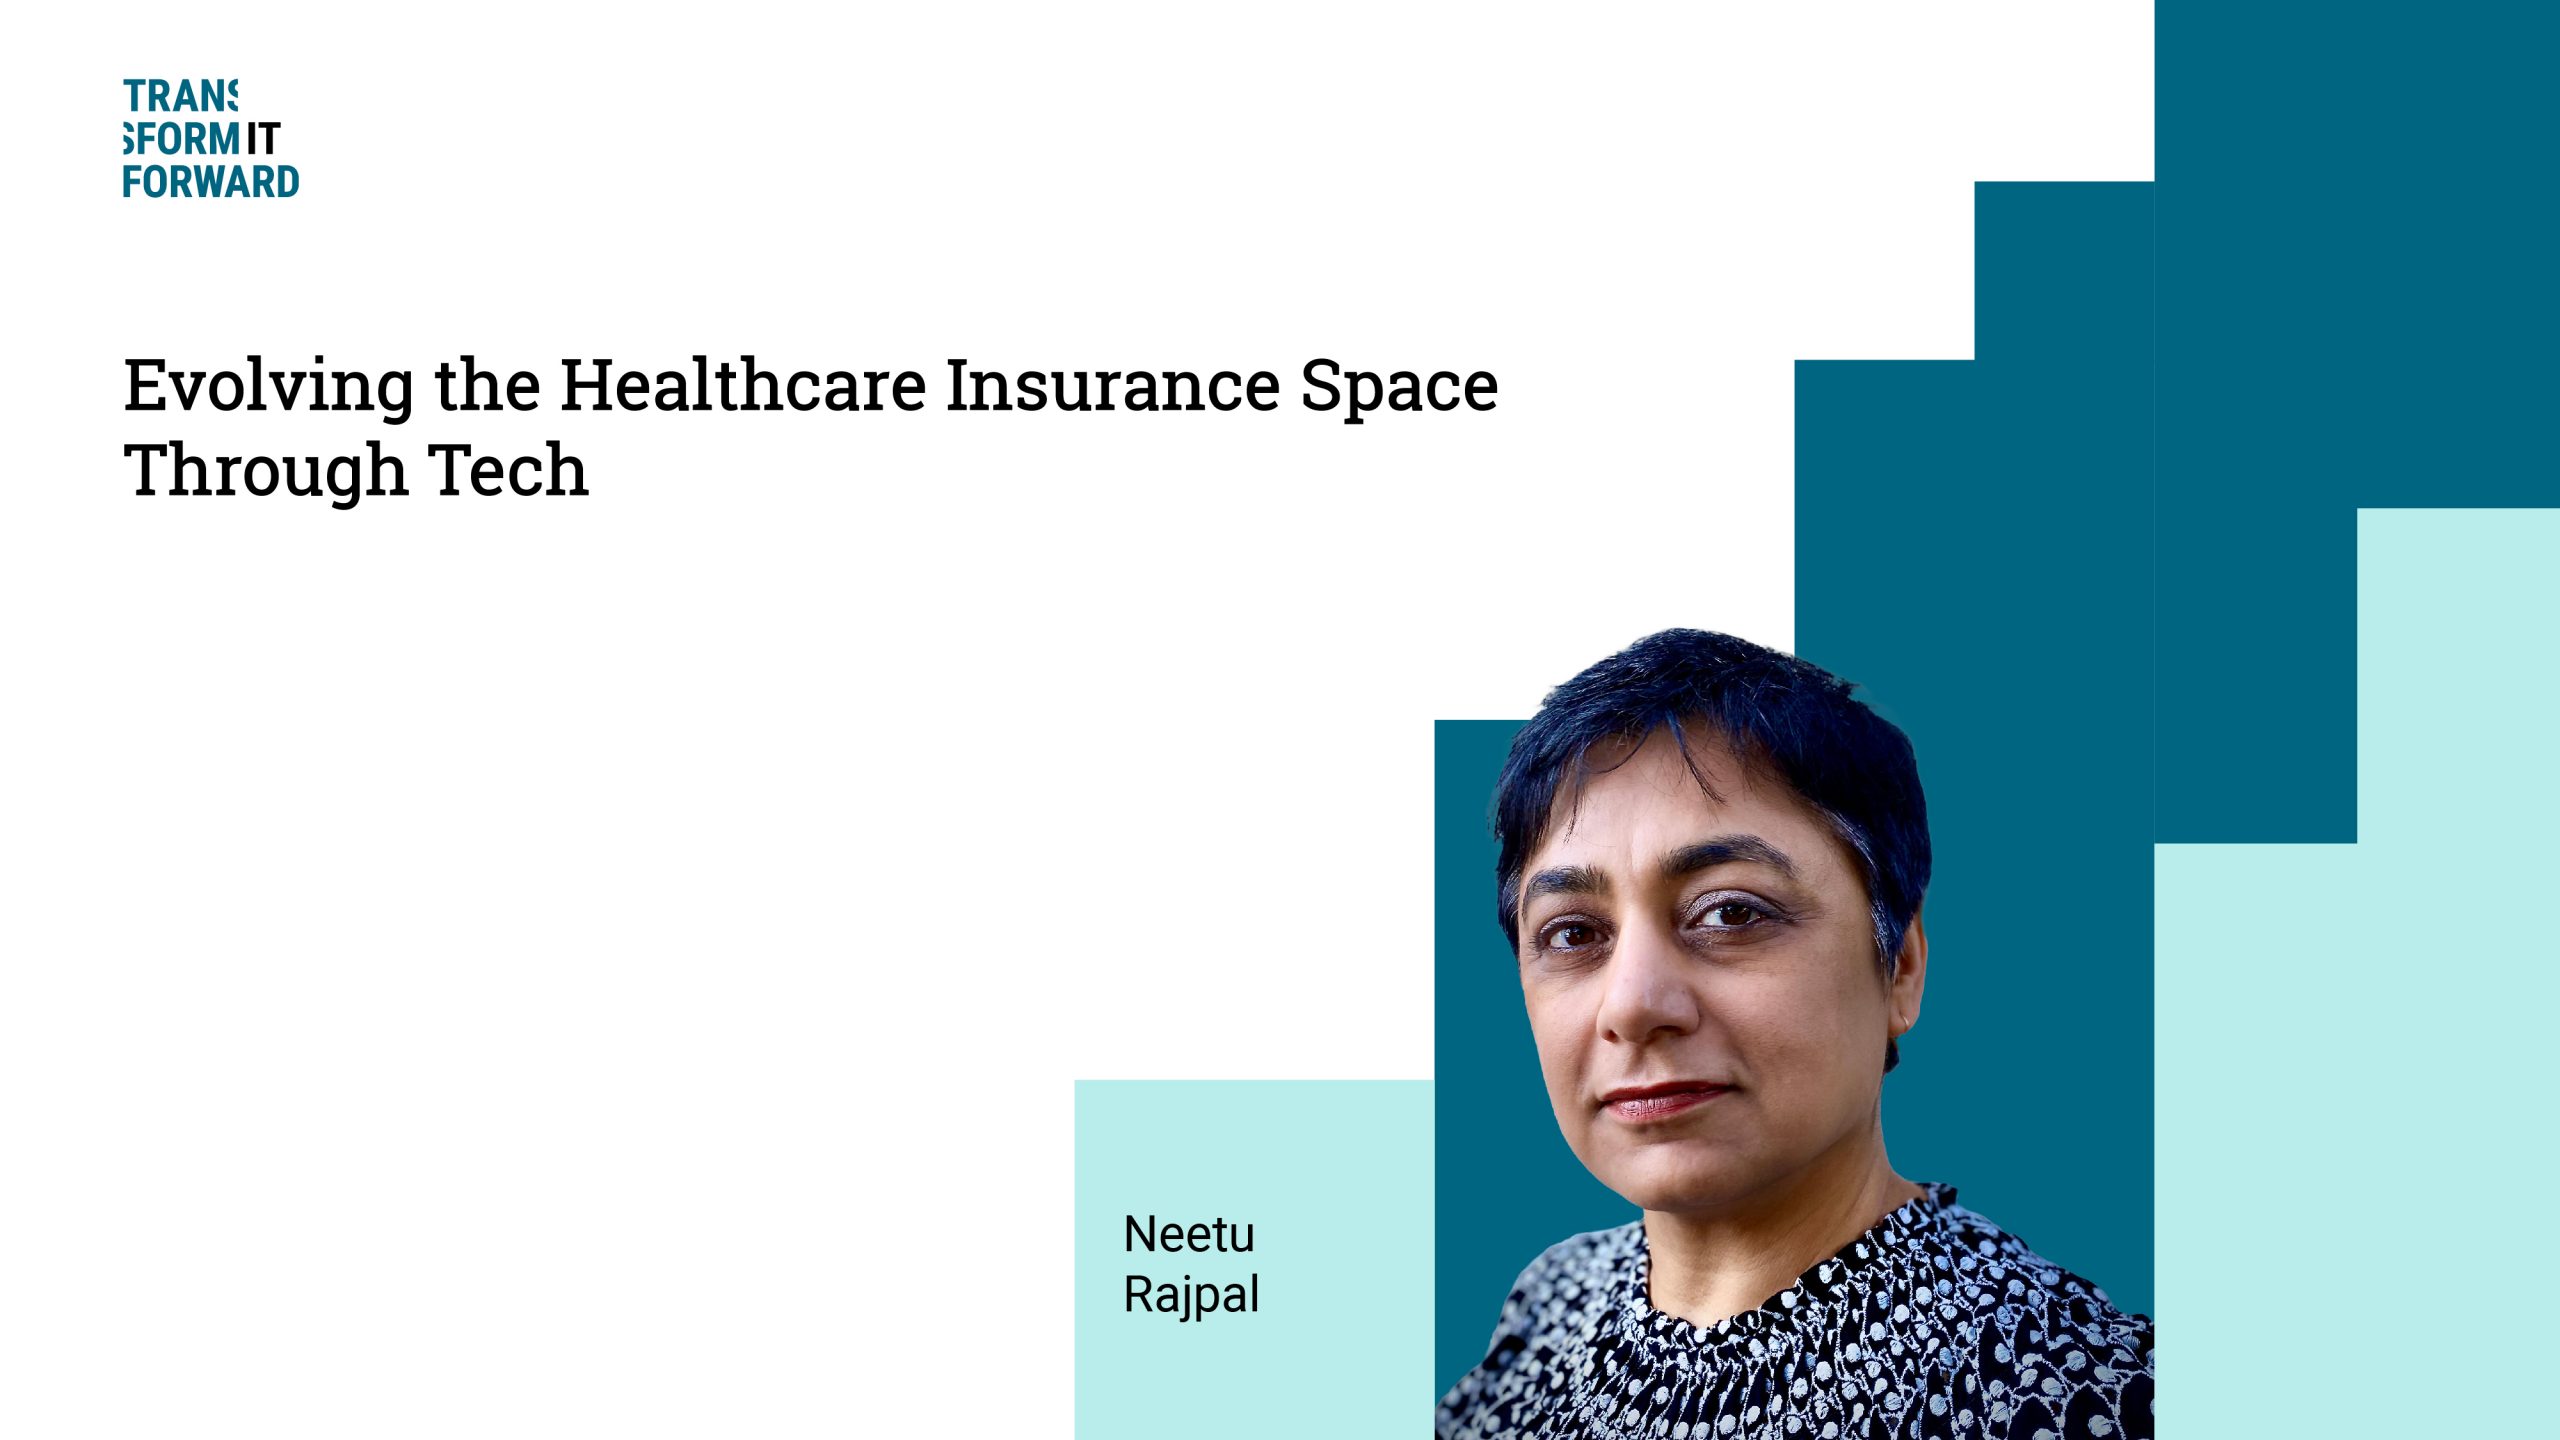 Evolving the healthcare insurance space through tech